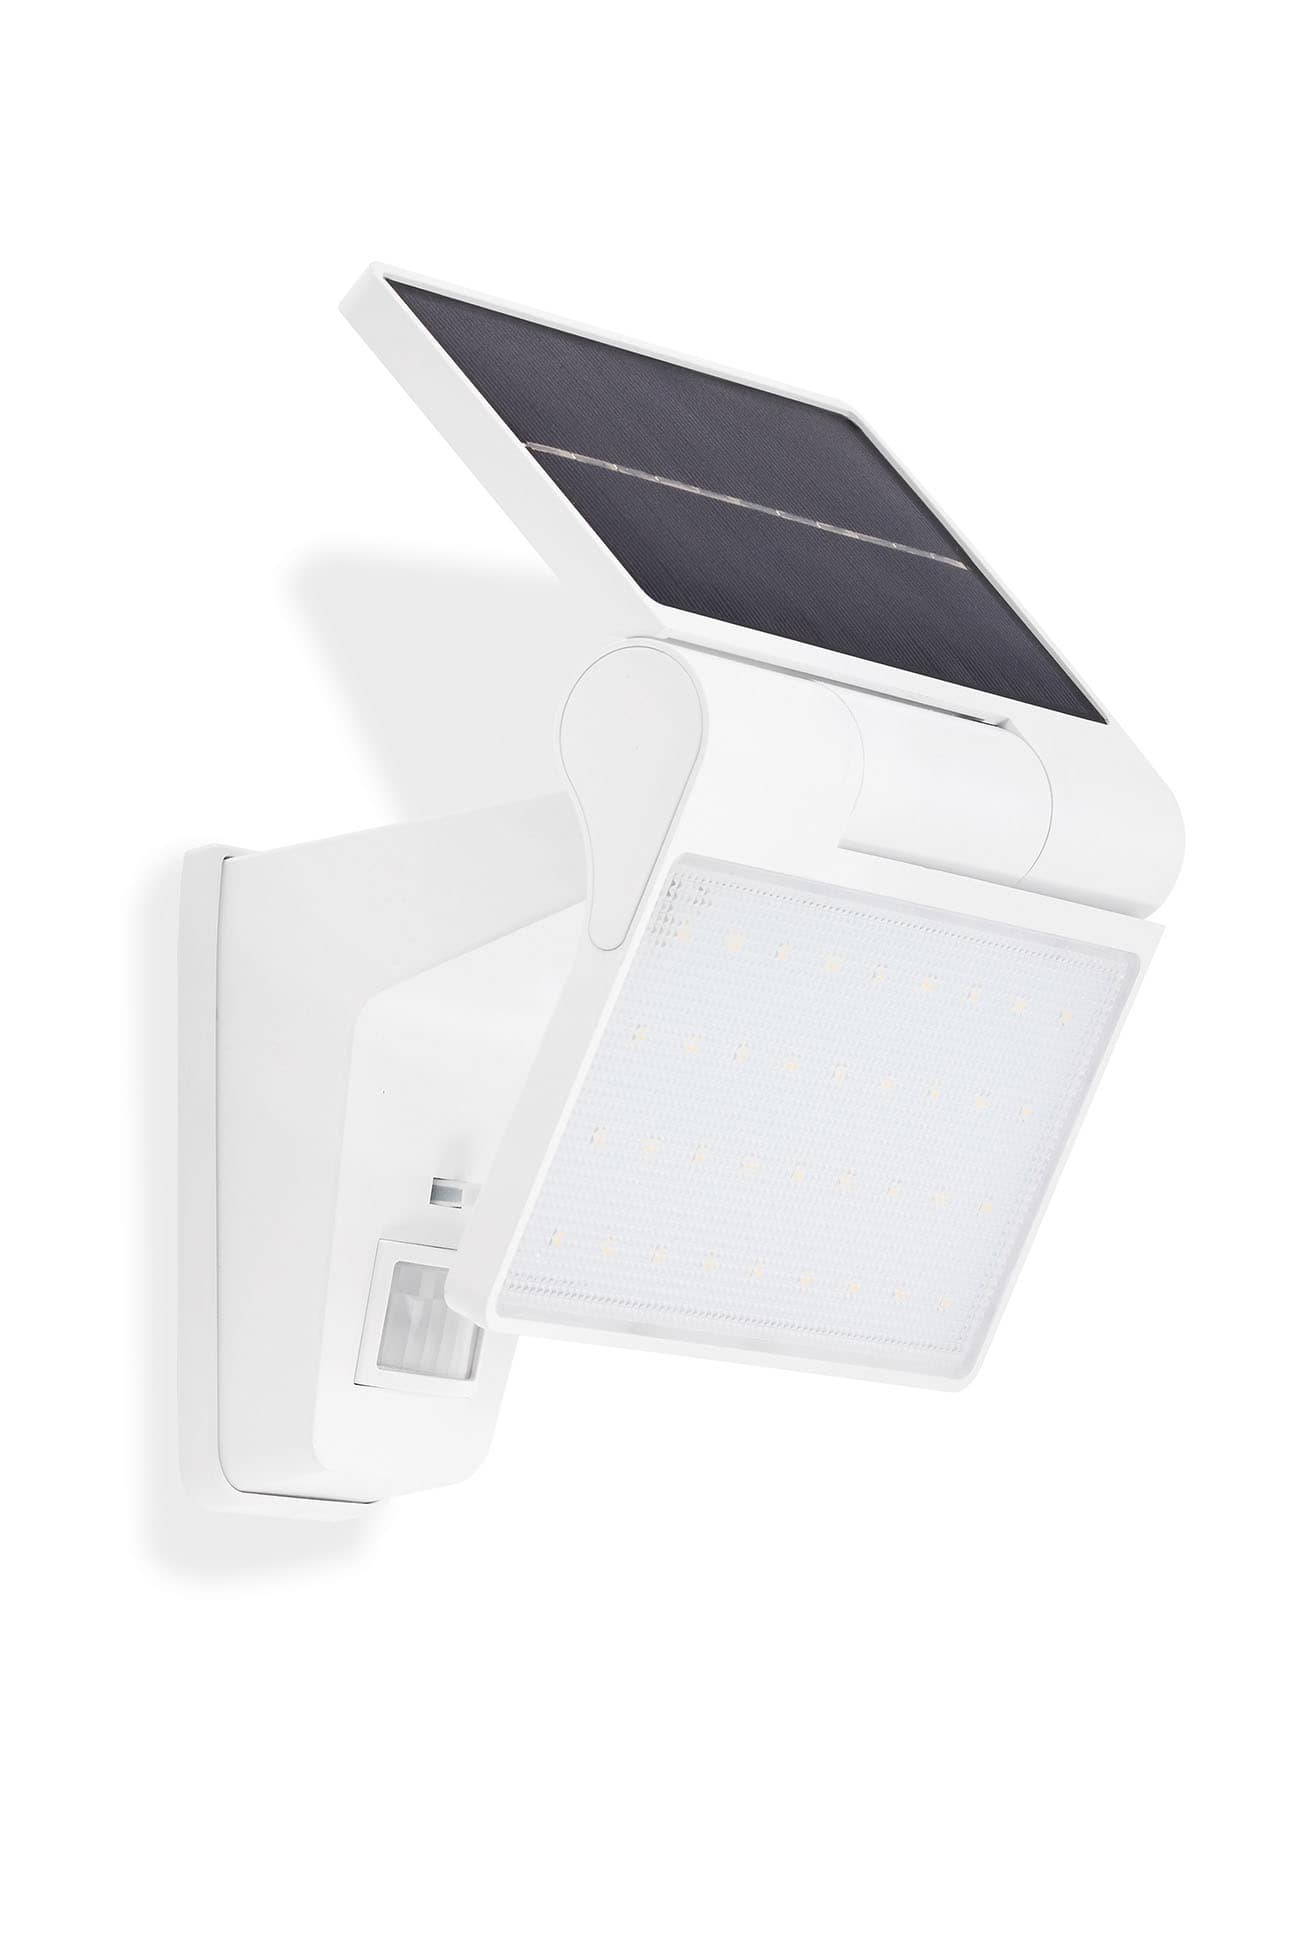 TELEFUNKEN LED Solar Außenstrahler, 22,9 cm, 3 W, Weiß